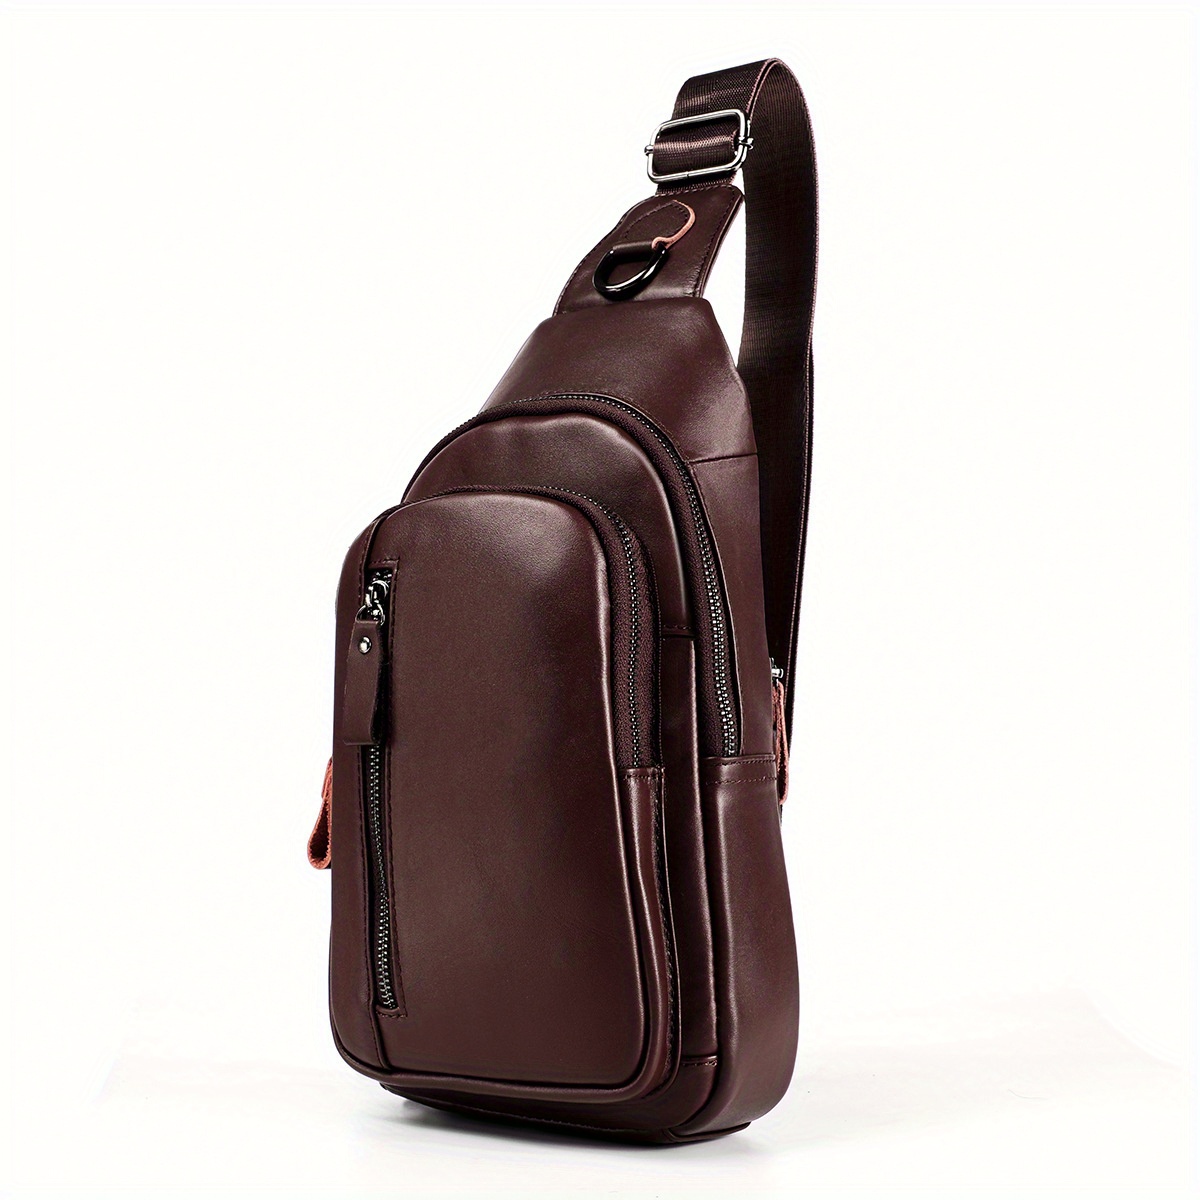 1 pc Blu Flut man bag Luxury Designer Women's Shoulder Bag Sport